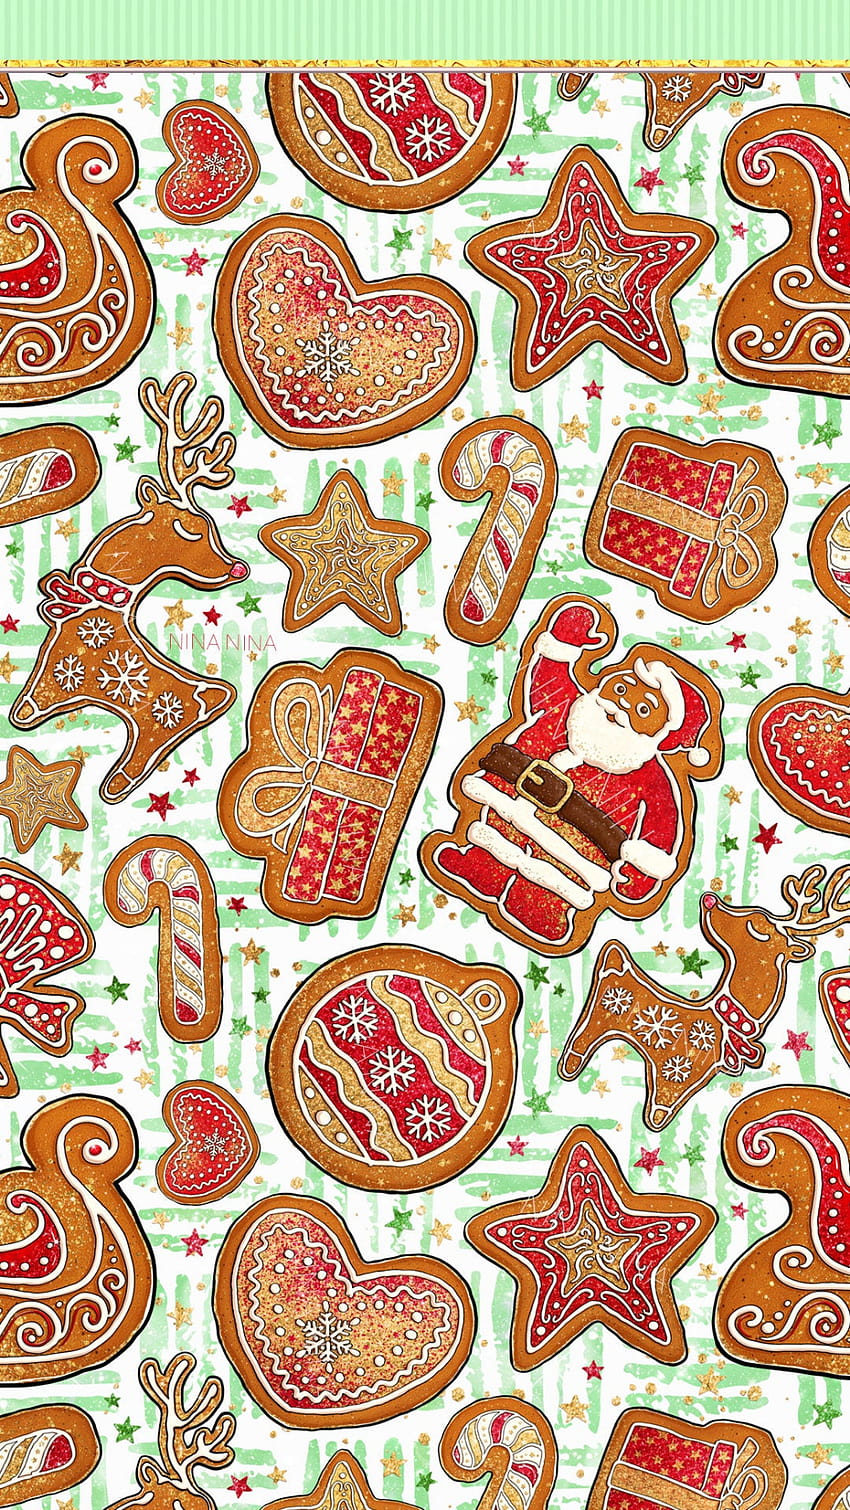 Weihnachten Digital Papers Pack, Lebkuchen, niedliche nahtlose Muster des Weihnachtsmanns, Kekse, Zuckerstangen, Süßigkeiten, Rentiere, Sterne, Weihnachtsstoff, Weihnachtslebkuchen kawaii HD-Handy-Hintergrundbild